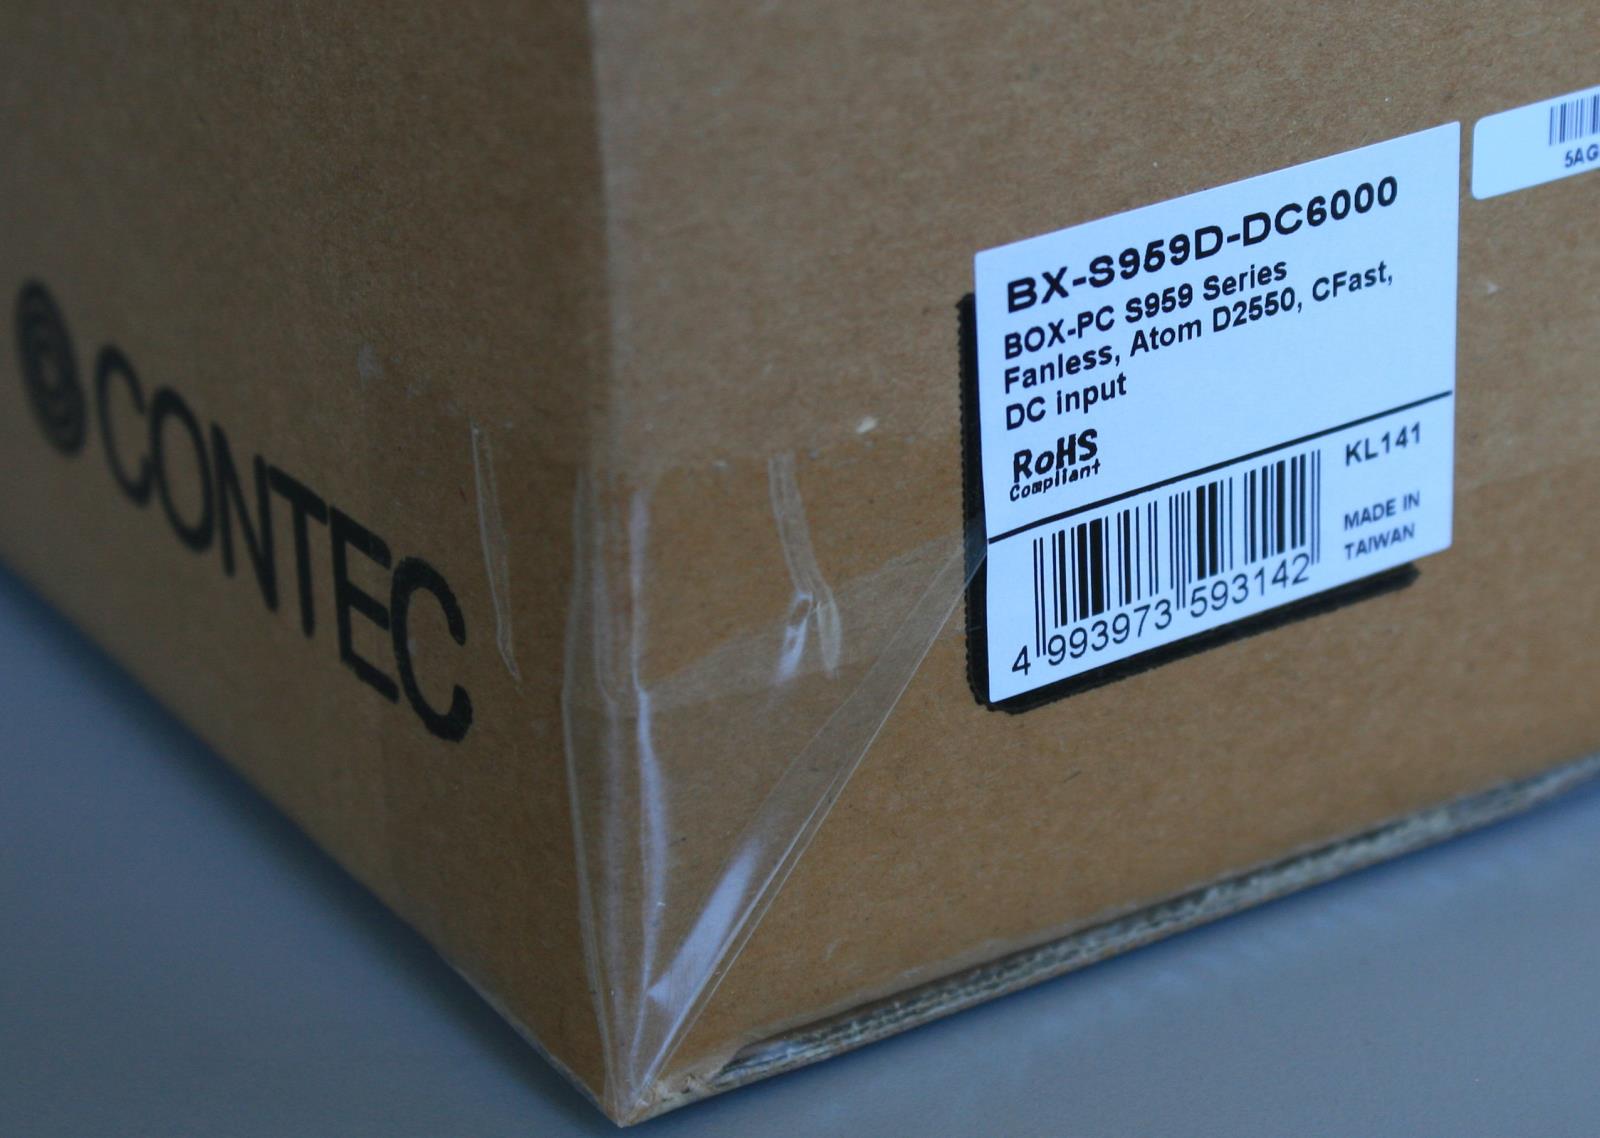 CONTEC DTx Industrial Thin Client BX-S959D-DC6000 1.86GHz 2GB RAM